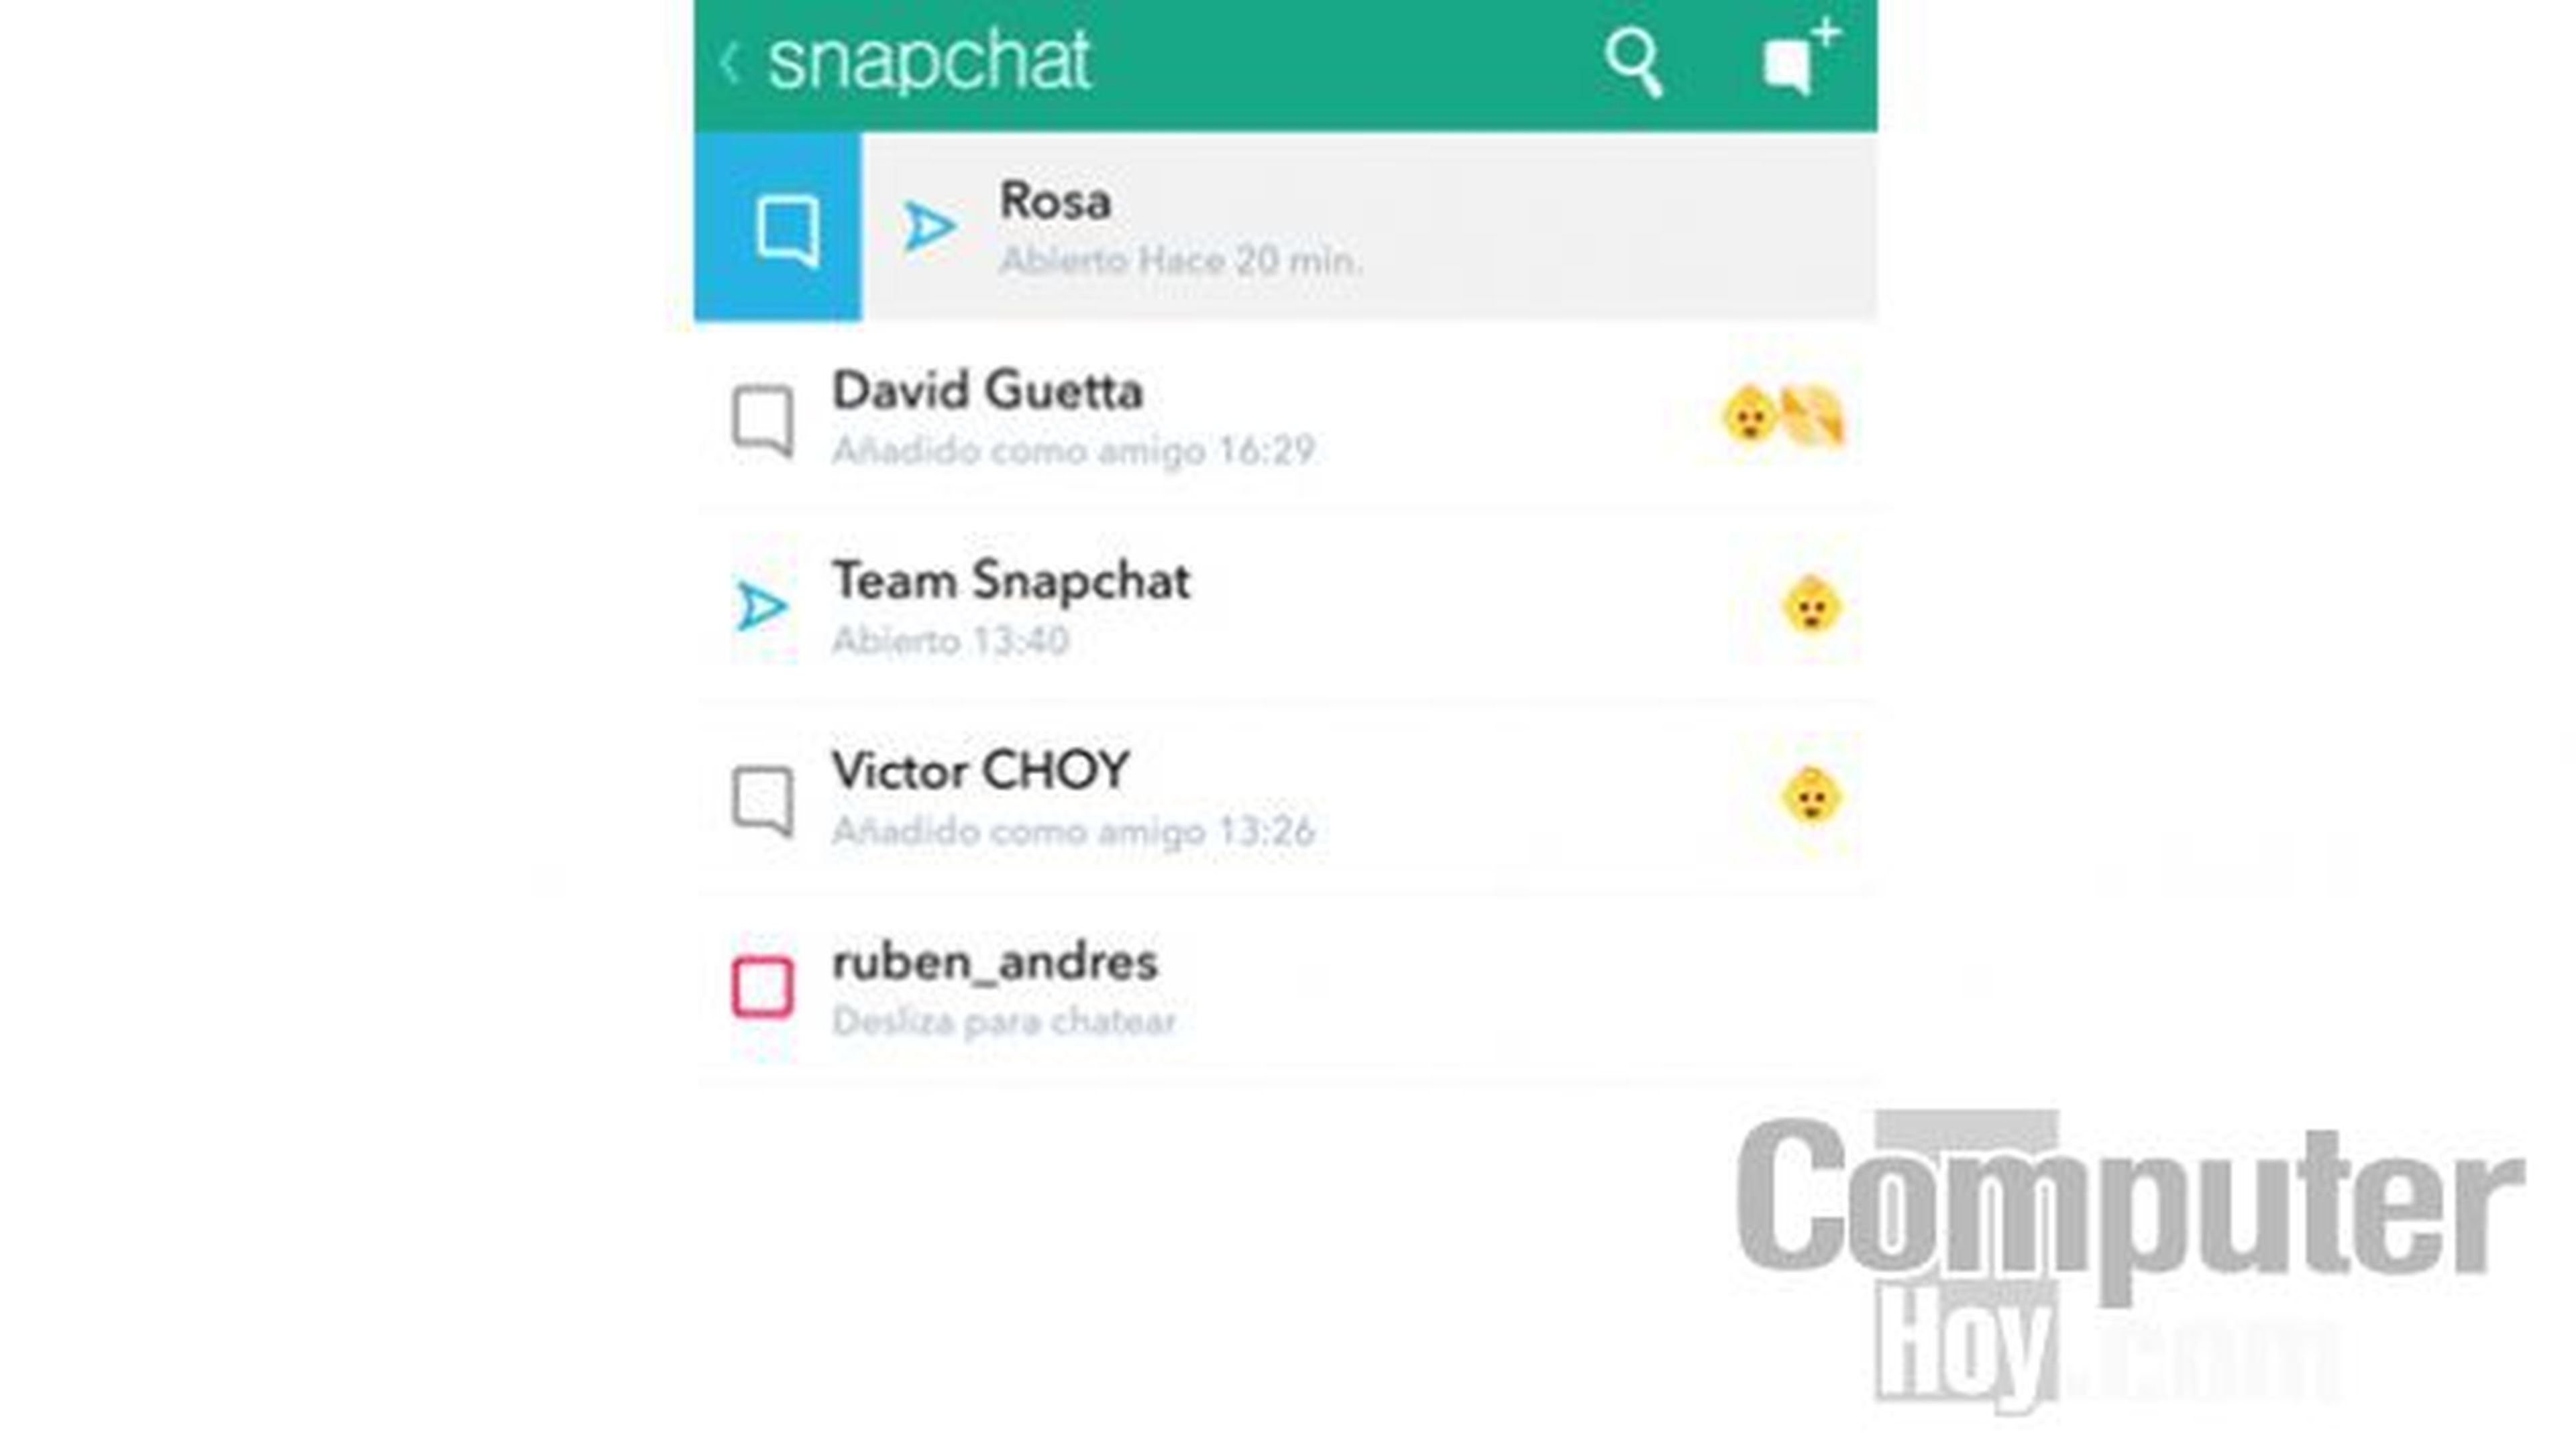 Además de enviar fotos y vídeos con fecha de caducidad a tus amigos, también puedes chatear con ellos desde el chat de Snapchat.